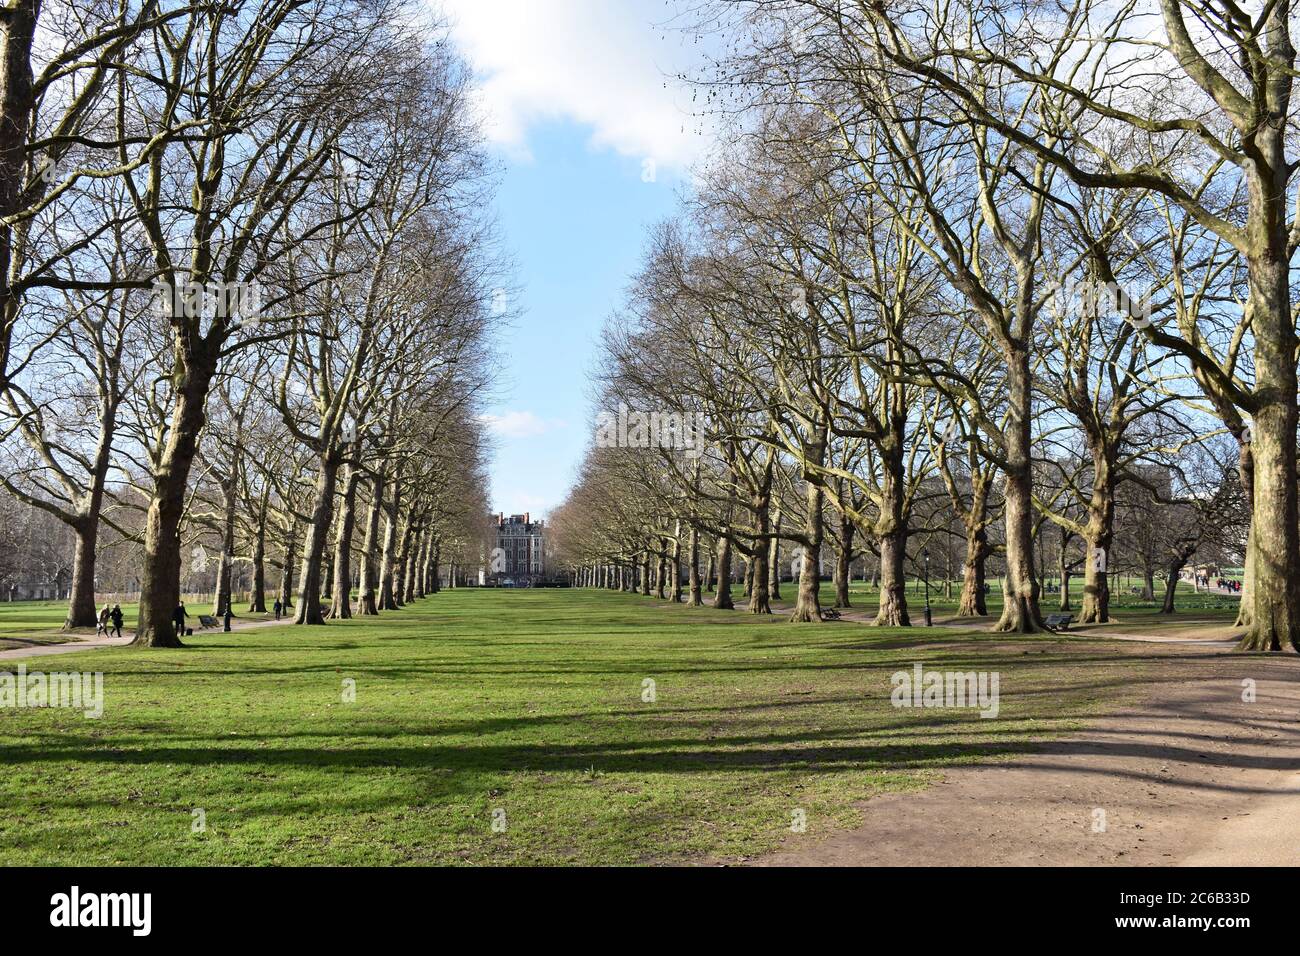 Laublose Bäume in einer Linie in Green Park, London Royal Parks of London. Ein paar Leute schlendern den Weg entlang. Stockfoto